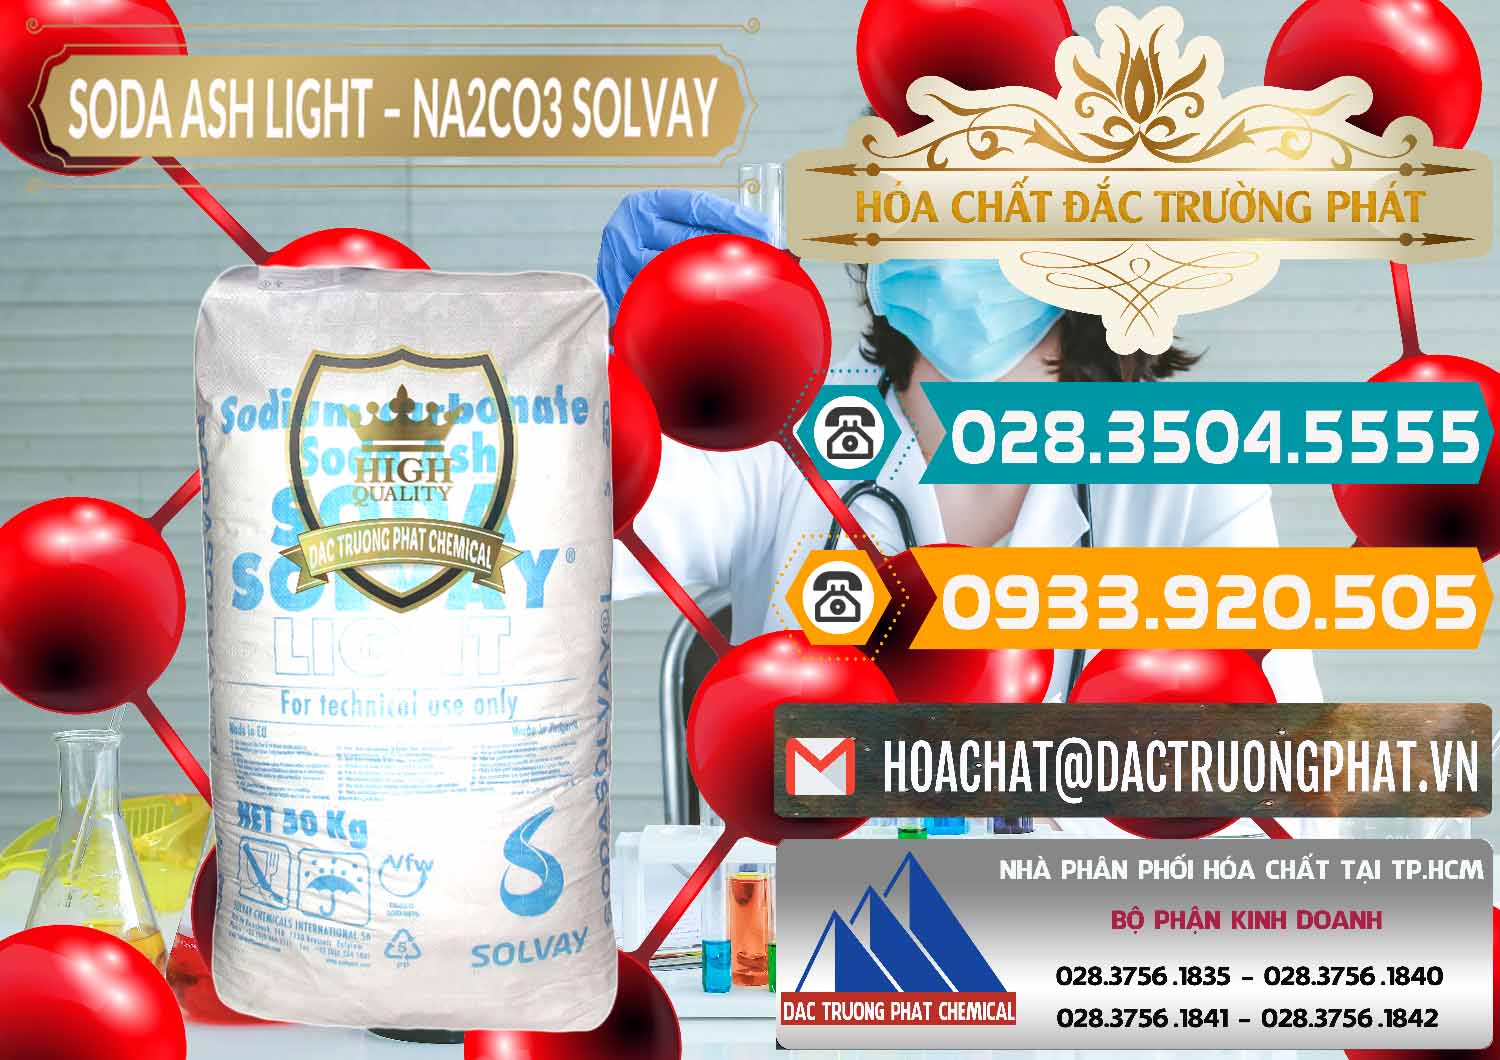 Cty chuyên cung cấp & bán Soda Ash Light - NA2CO3 Solvay Bulgaria - 0126 - Công ty cung cấp & phân phối hóa chất tại TP.HCM - congtyhoachat.vn